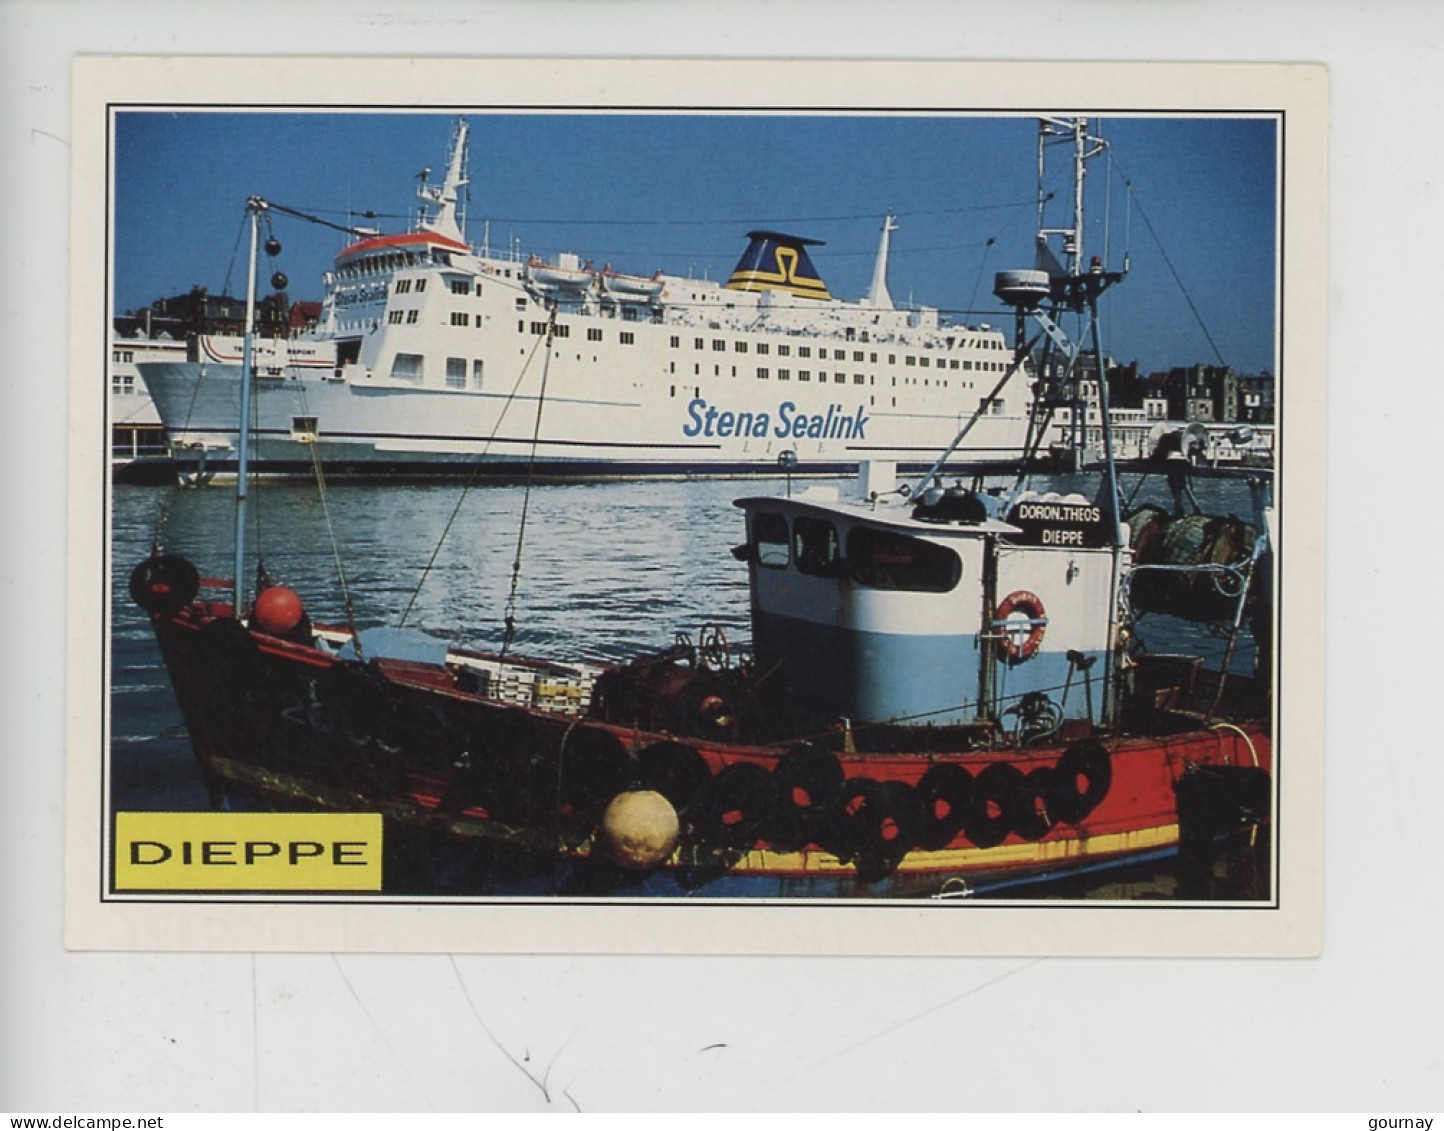 Dieppe, La Pêche Et Les Ferries Cohabitent... Bateau Doron-Théos Et Stena Parisiensealink - Cp Vierge N°1093/76 Dubray - Dieppe